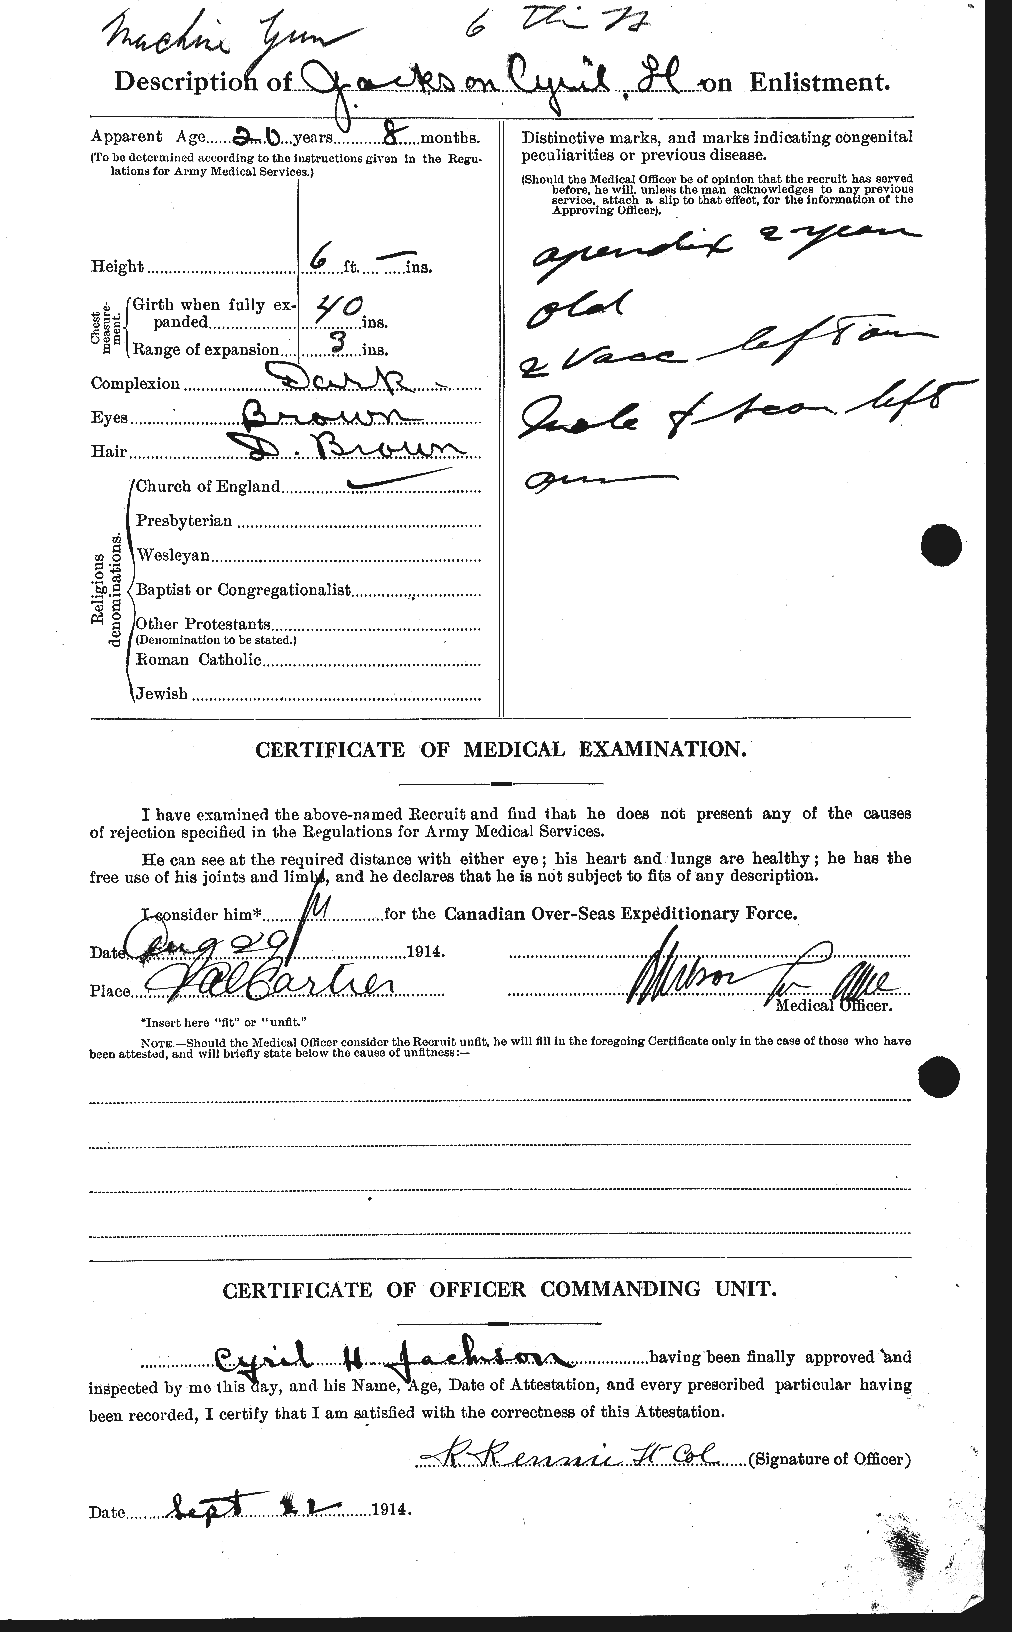 Dossiers du Personnel de la Première Guerre mondiale - CEC 411857b